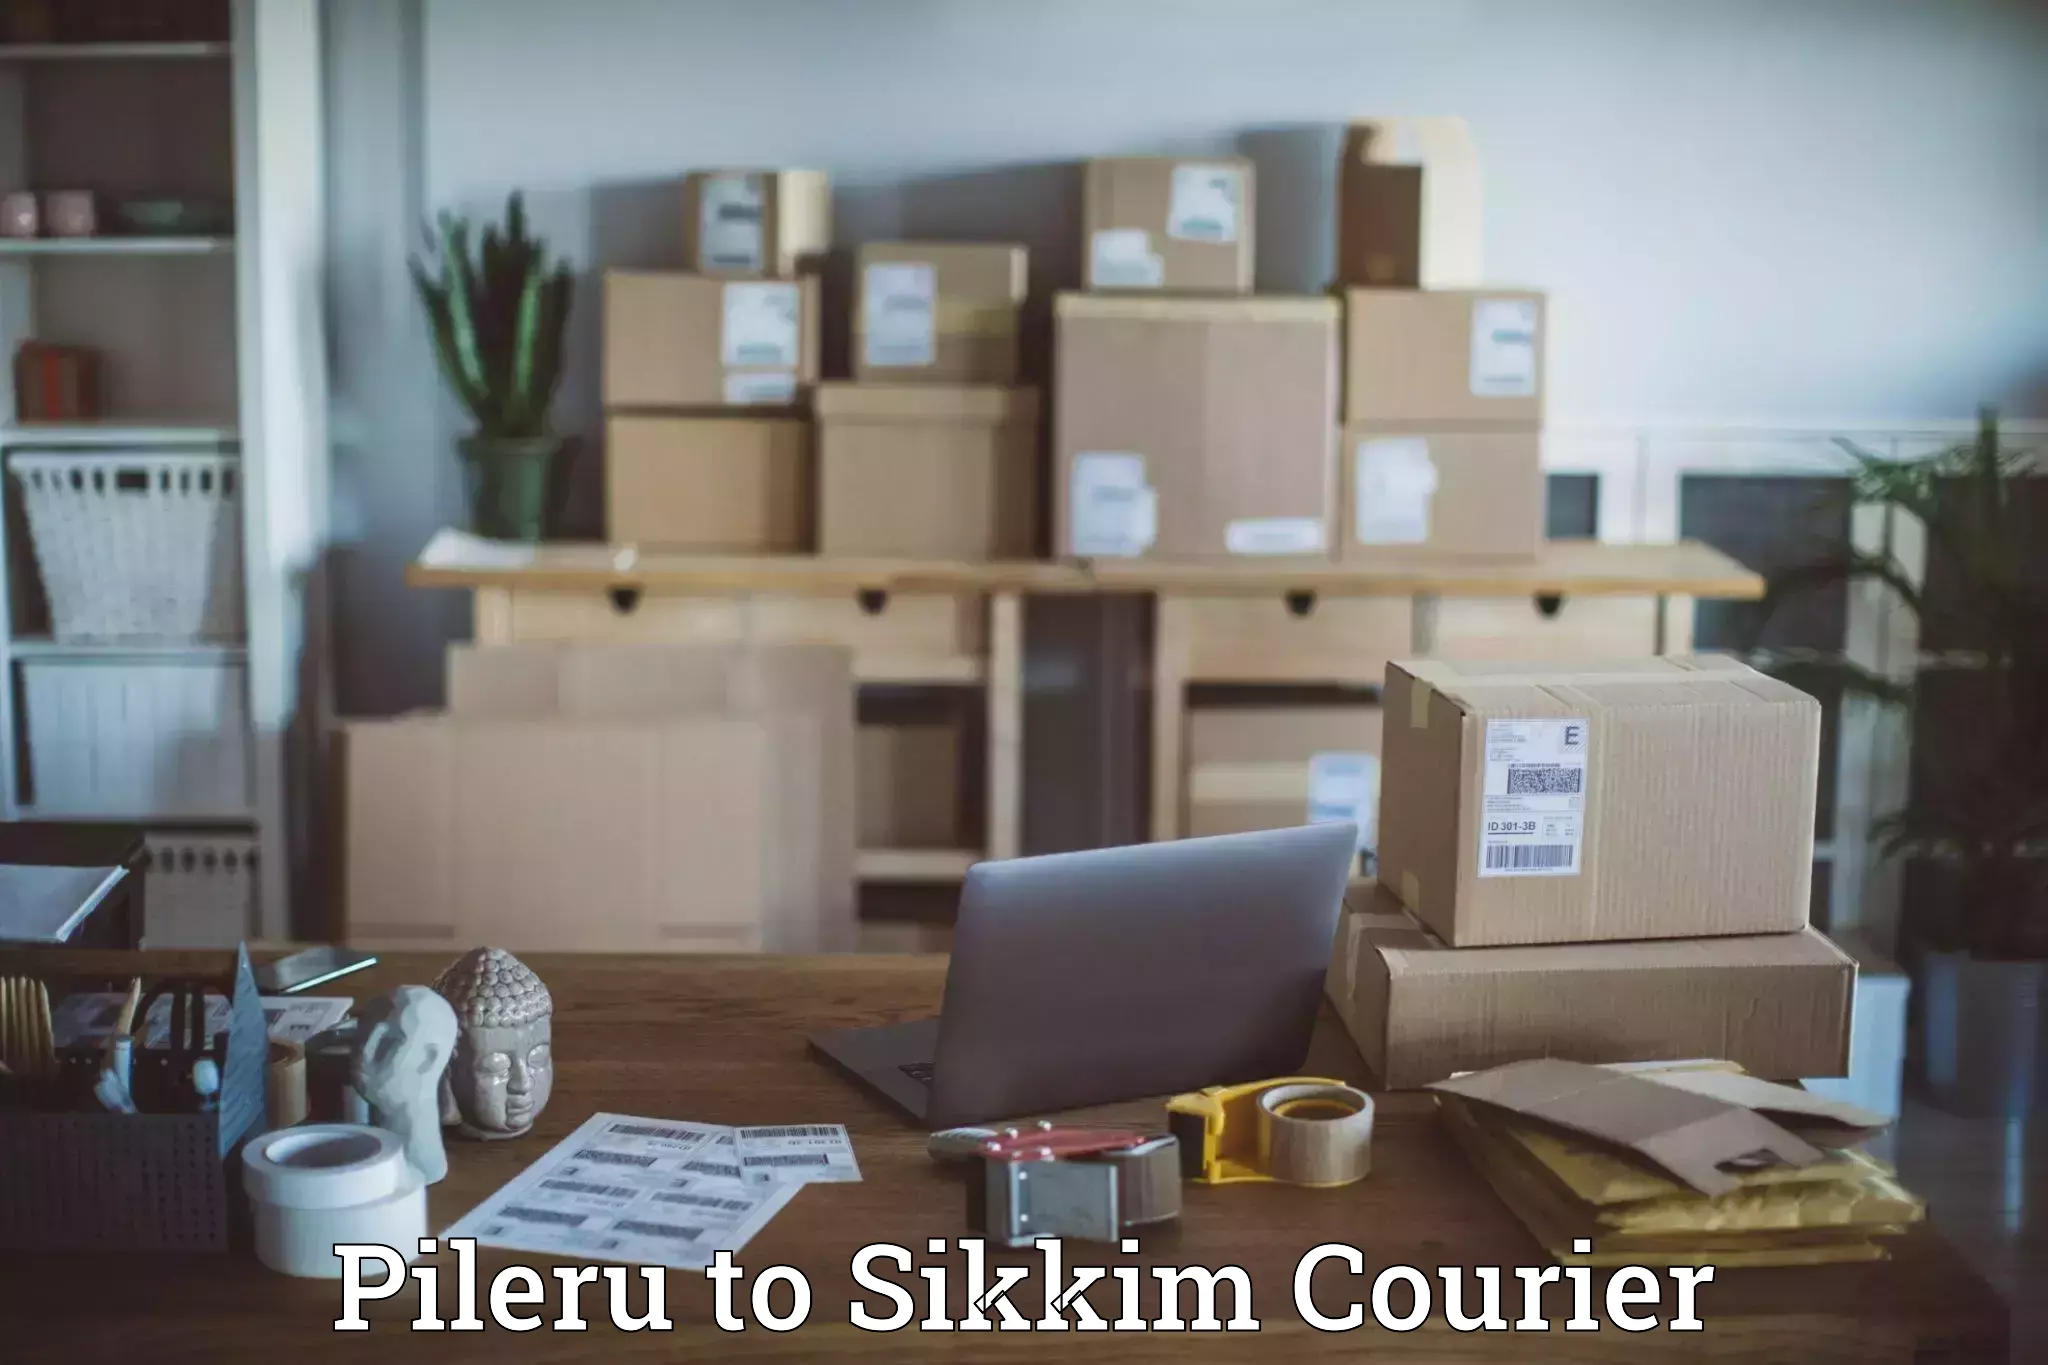 User-friendly courier app Pileru to Sikkim